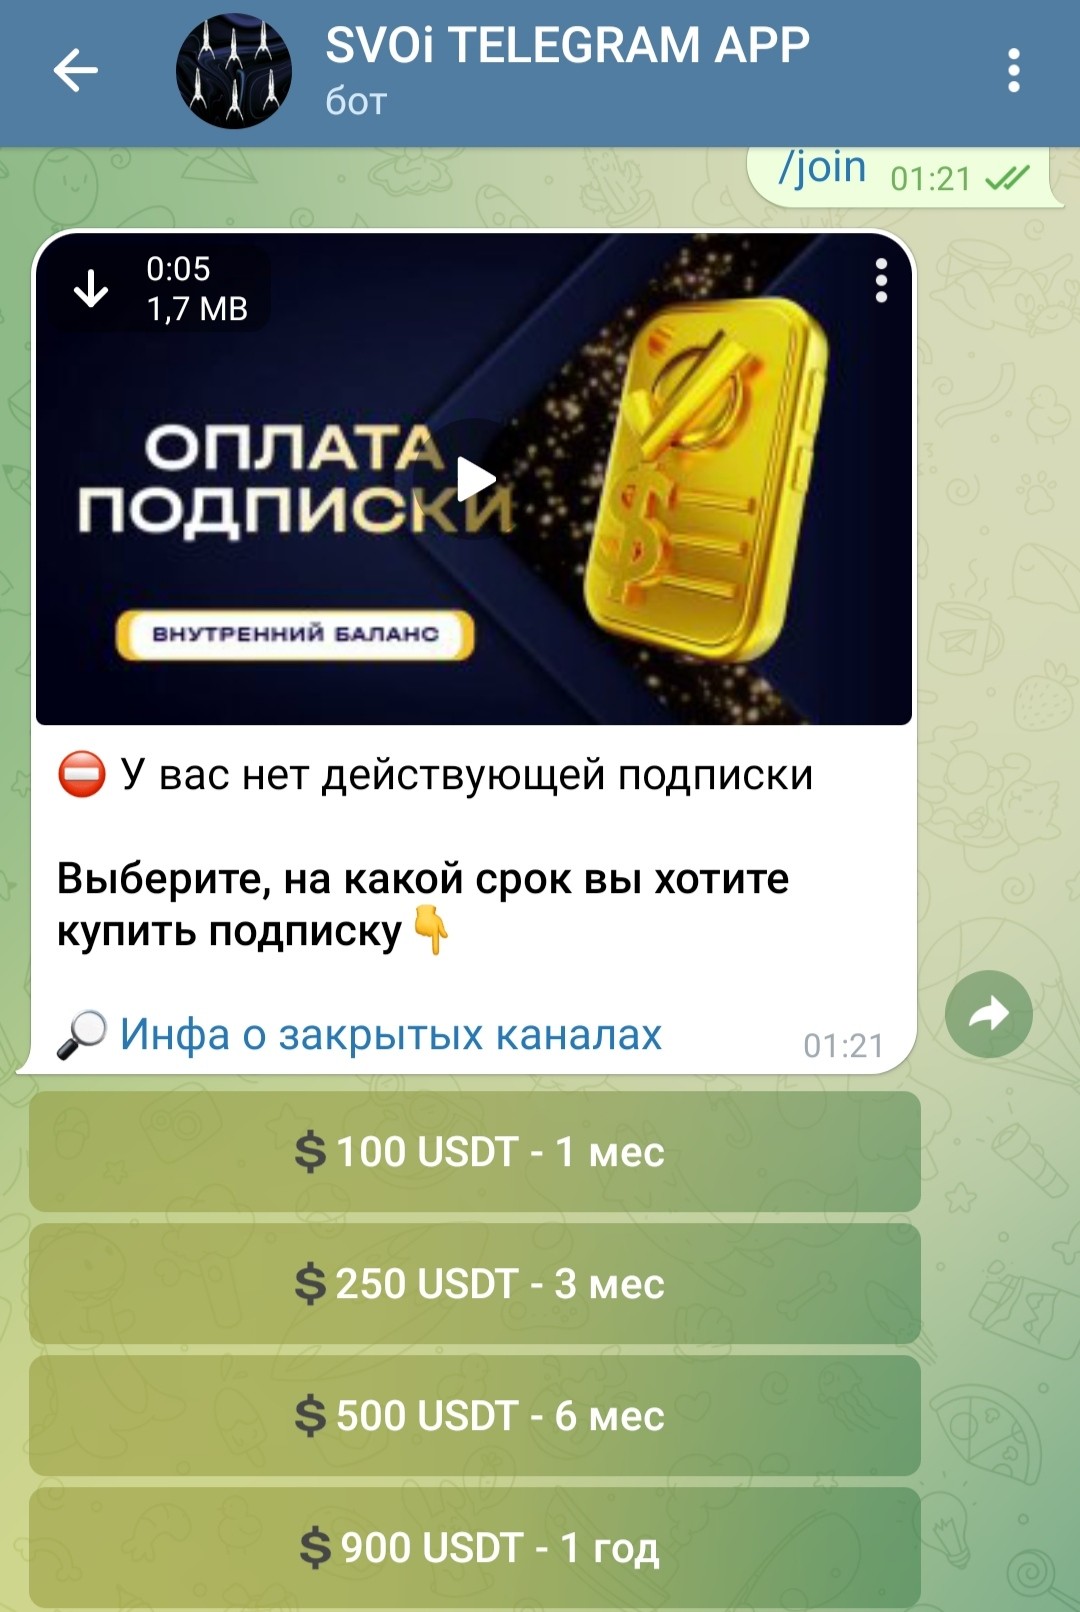 Игорь Виноградов бот SVOi TELEGRAM APP